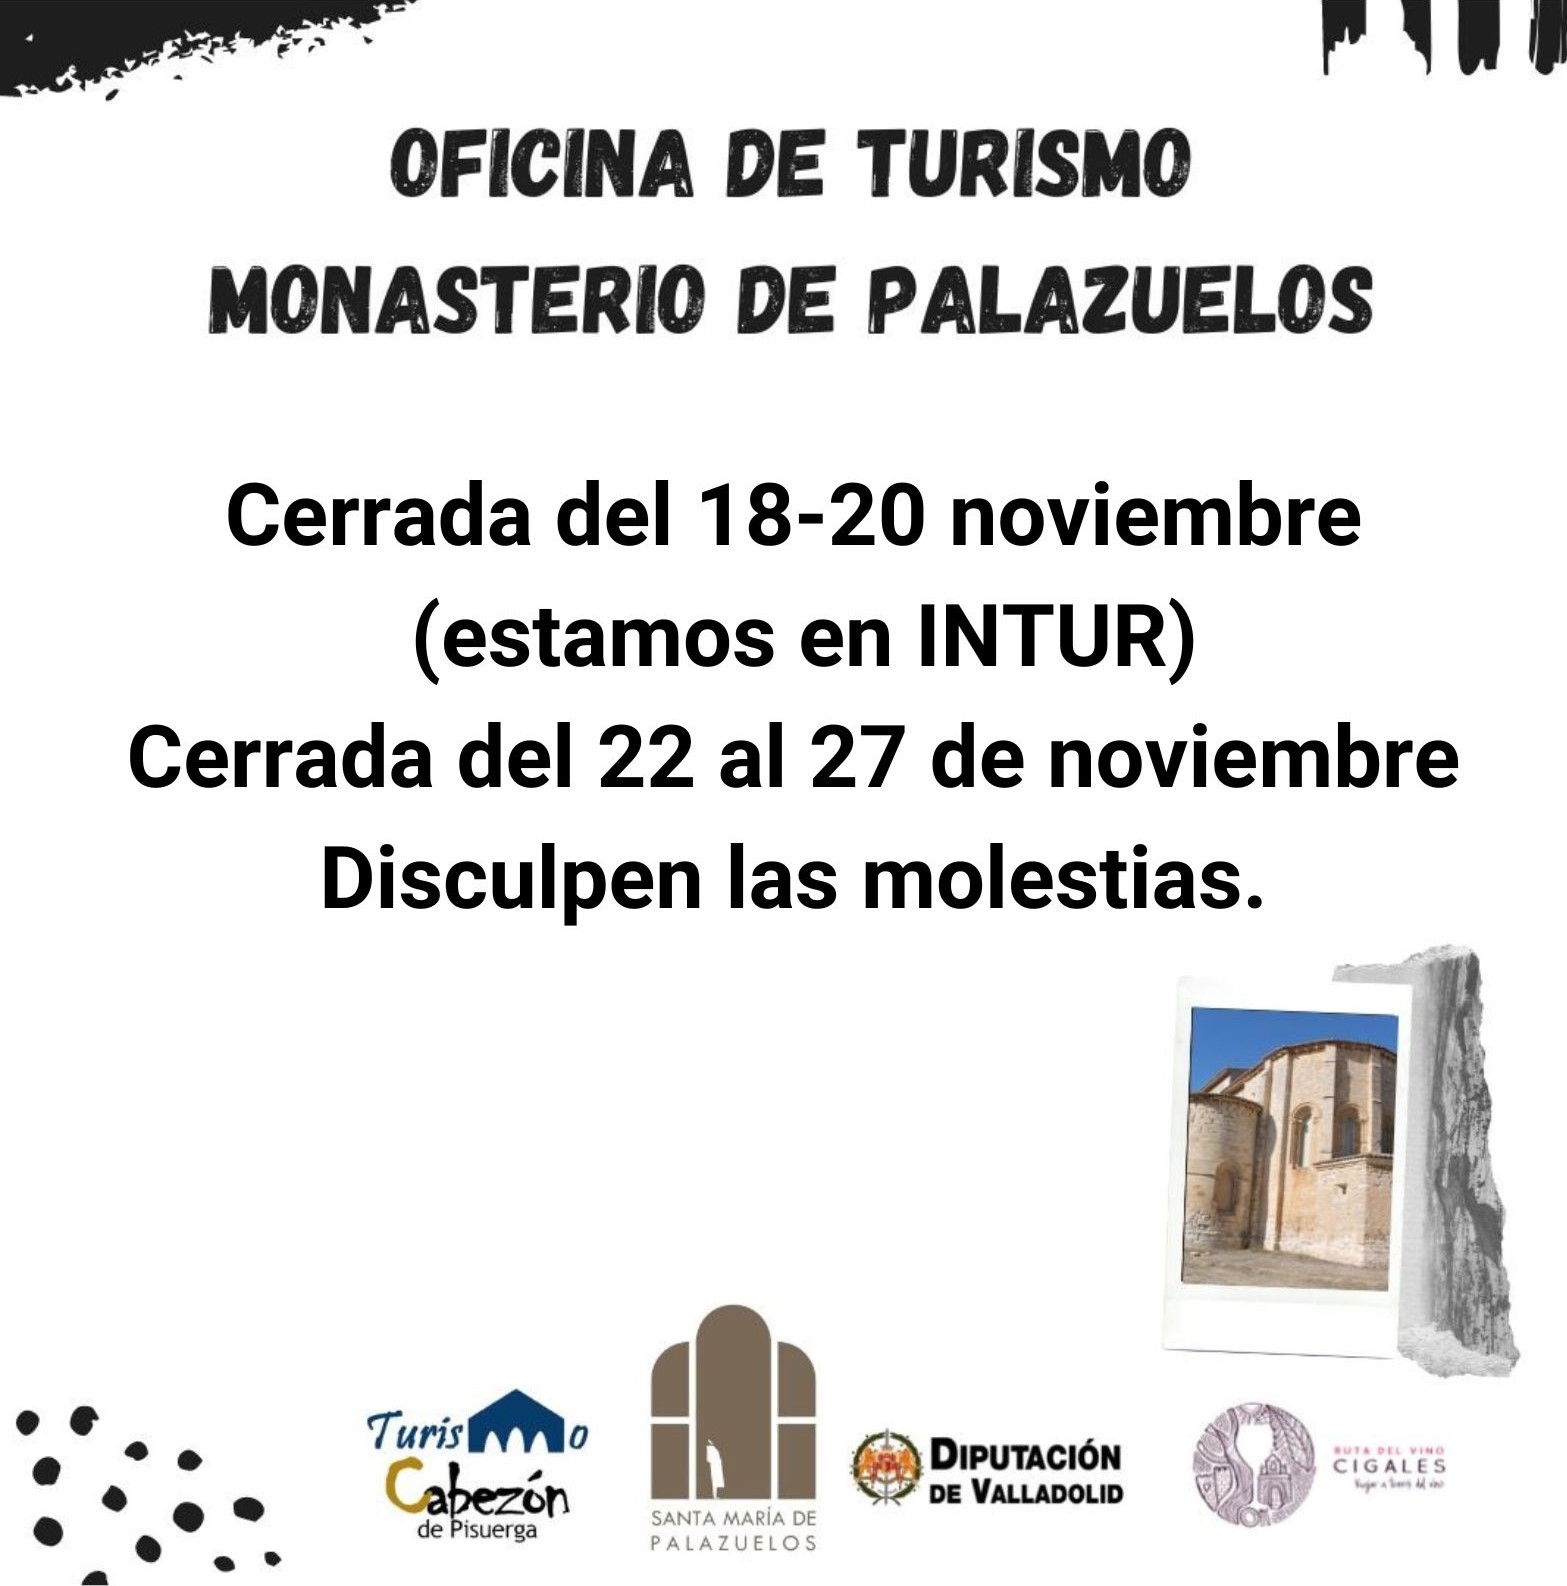 Encuentro de Carlos I y el Infante D. Carlos. Domingo 13 de noviembre, 19h en el Monasterio de Palazuelos